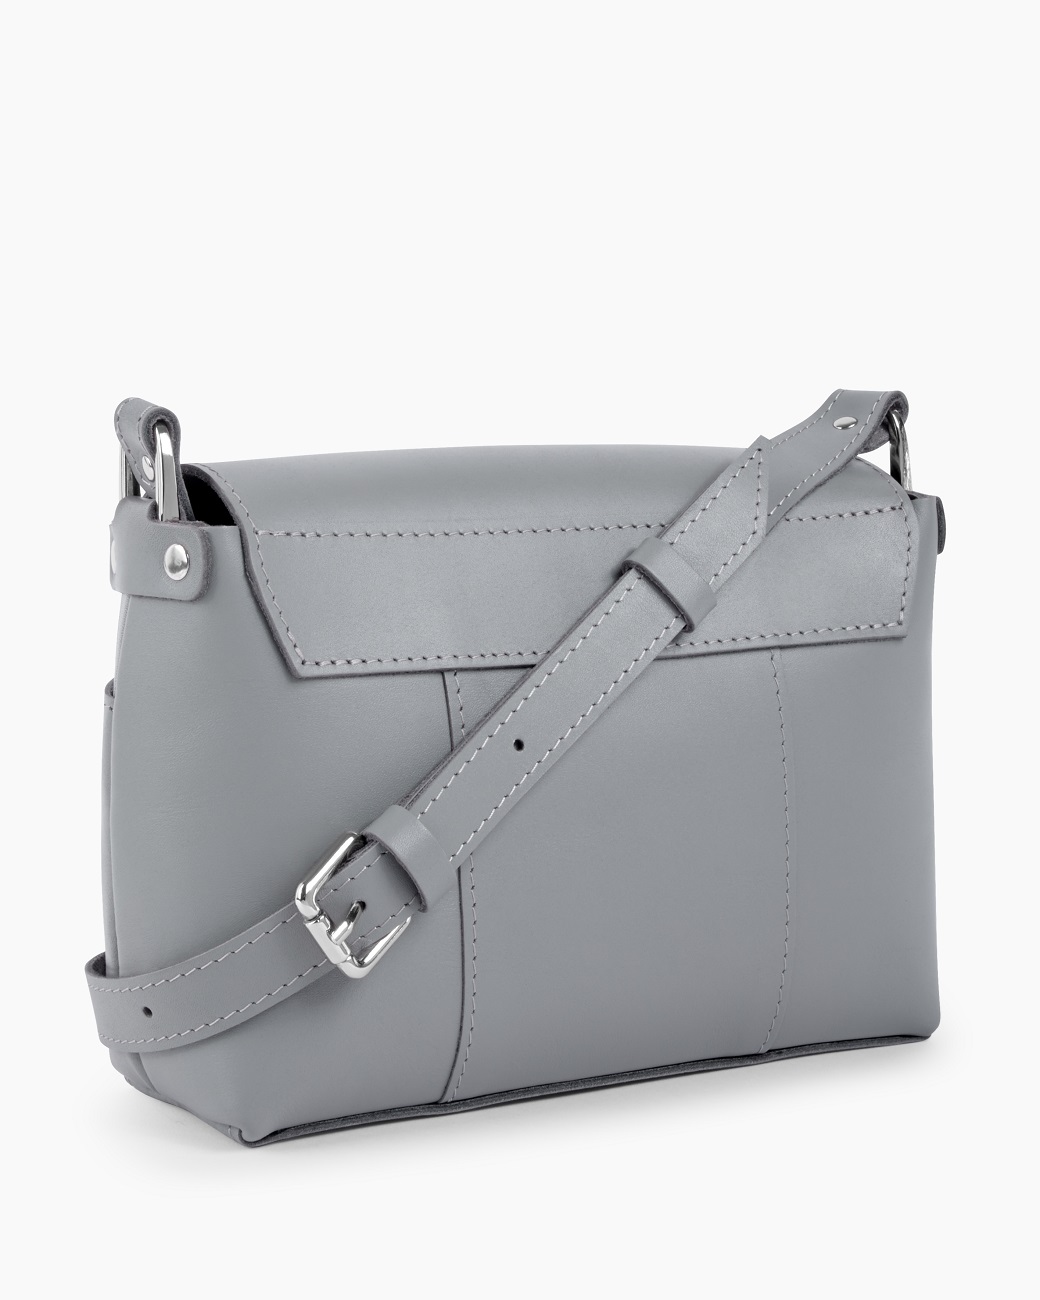 Женская сумка через плечо из натуральной кожи серая A011 grey